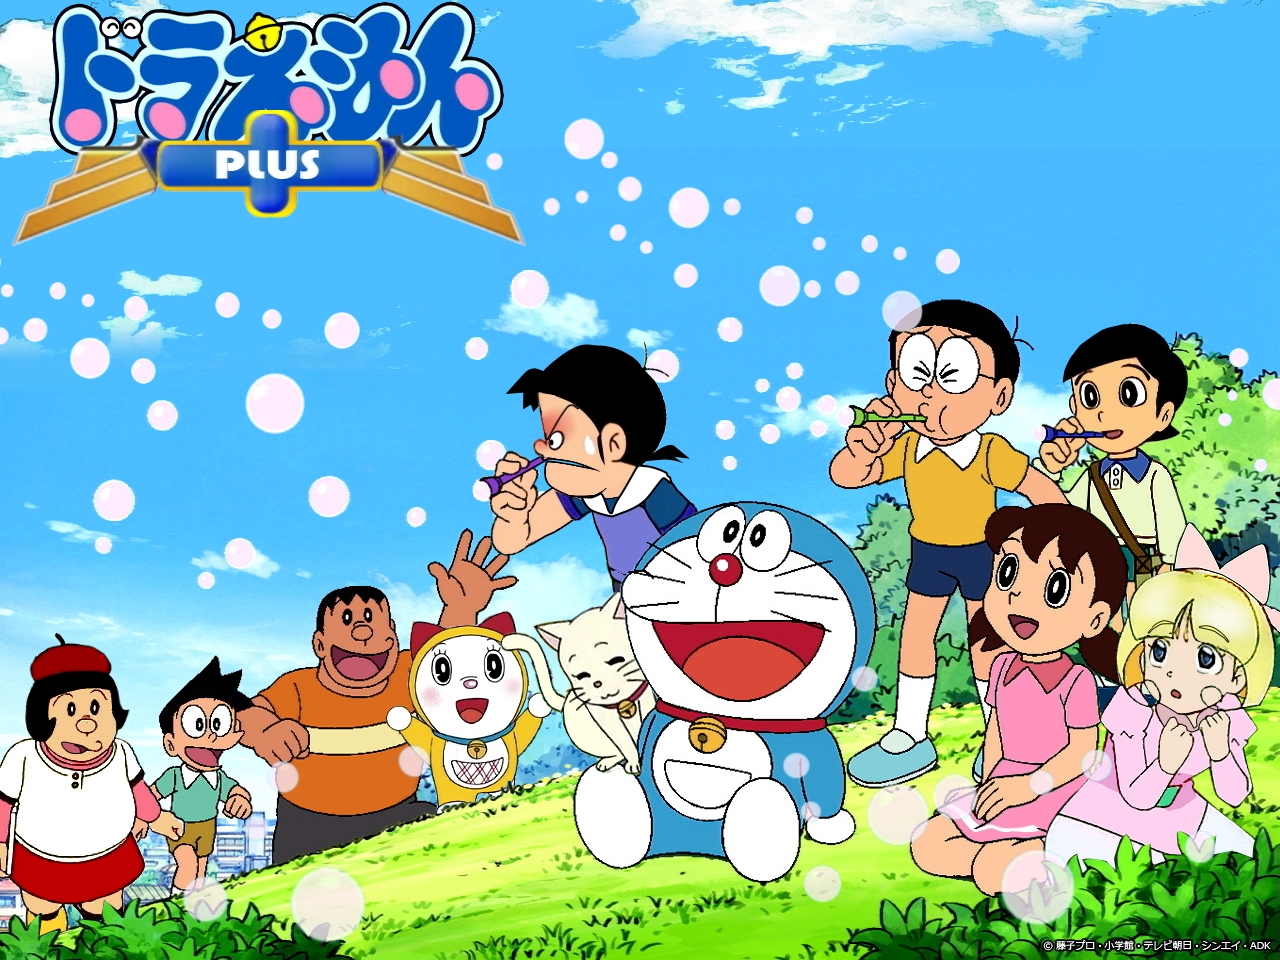 Doraemon Pictures: Bạn là fan của Doraemon và đang muốn tìm kiếm những bức ảnh đáng yêu về chú mèo máy này? Đừng bỏ lỡ bộ sưu tập Doraemon Pictures hình ảnh đầy đủ các nhân vật trong bộ truyện này, sẽ giúp bạn thỏa mãn niềm đam mê.